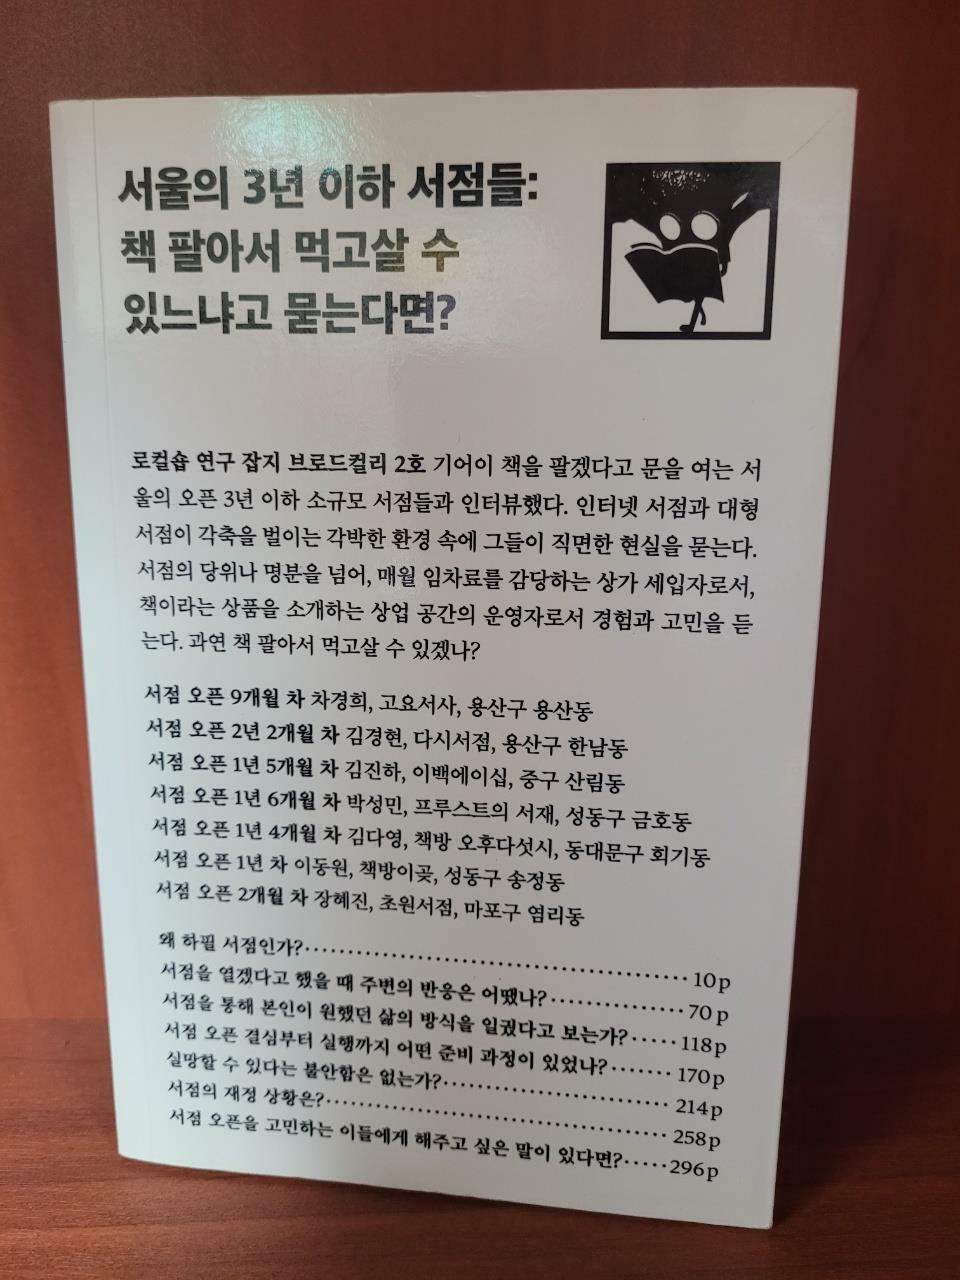 [중고] 서울의 3년 이하 서점들 : 책 팔아서 먹고살 수 있느냐고 묻는다면?